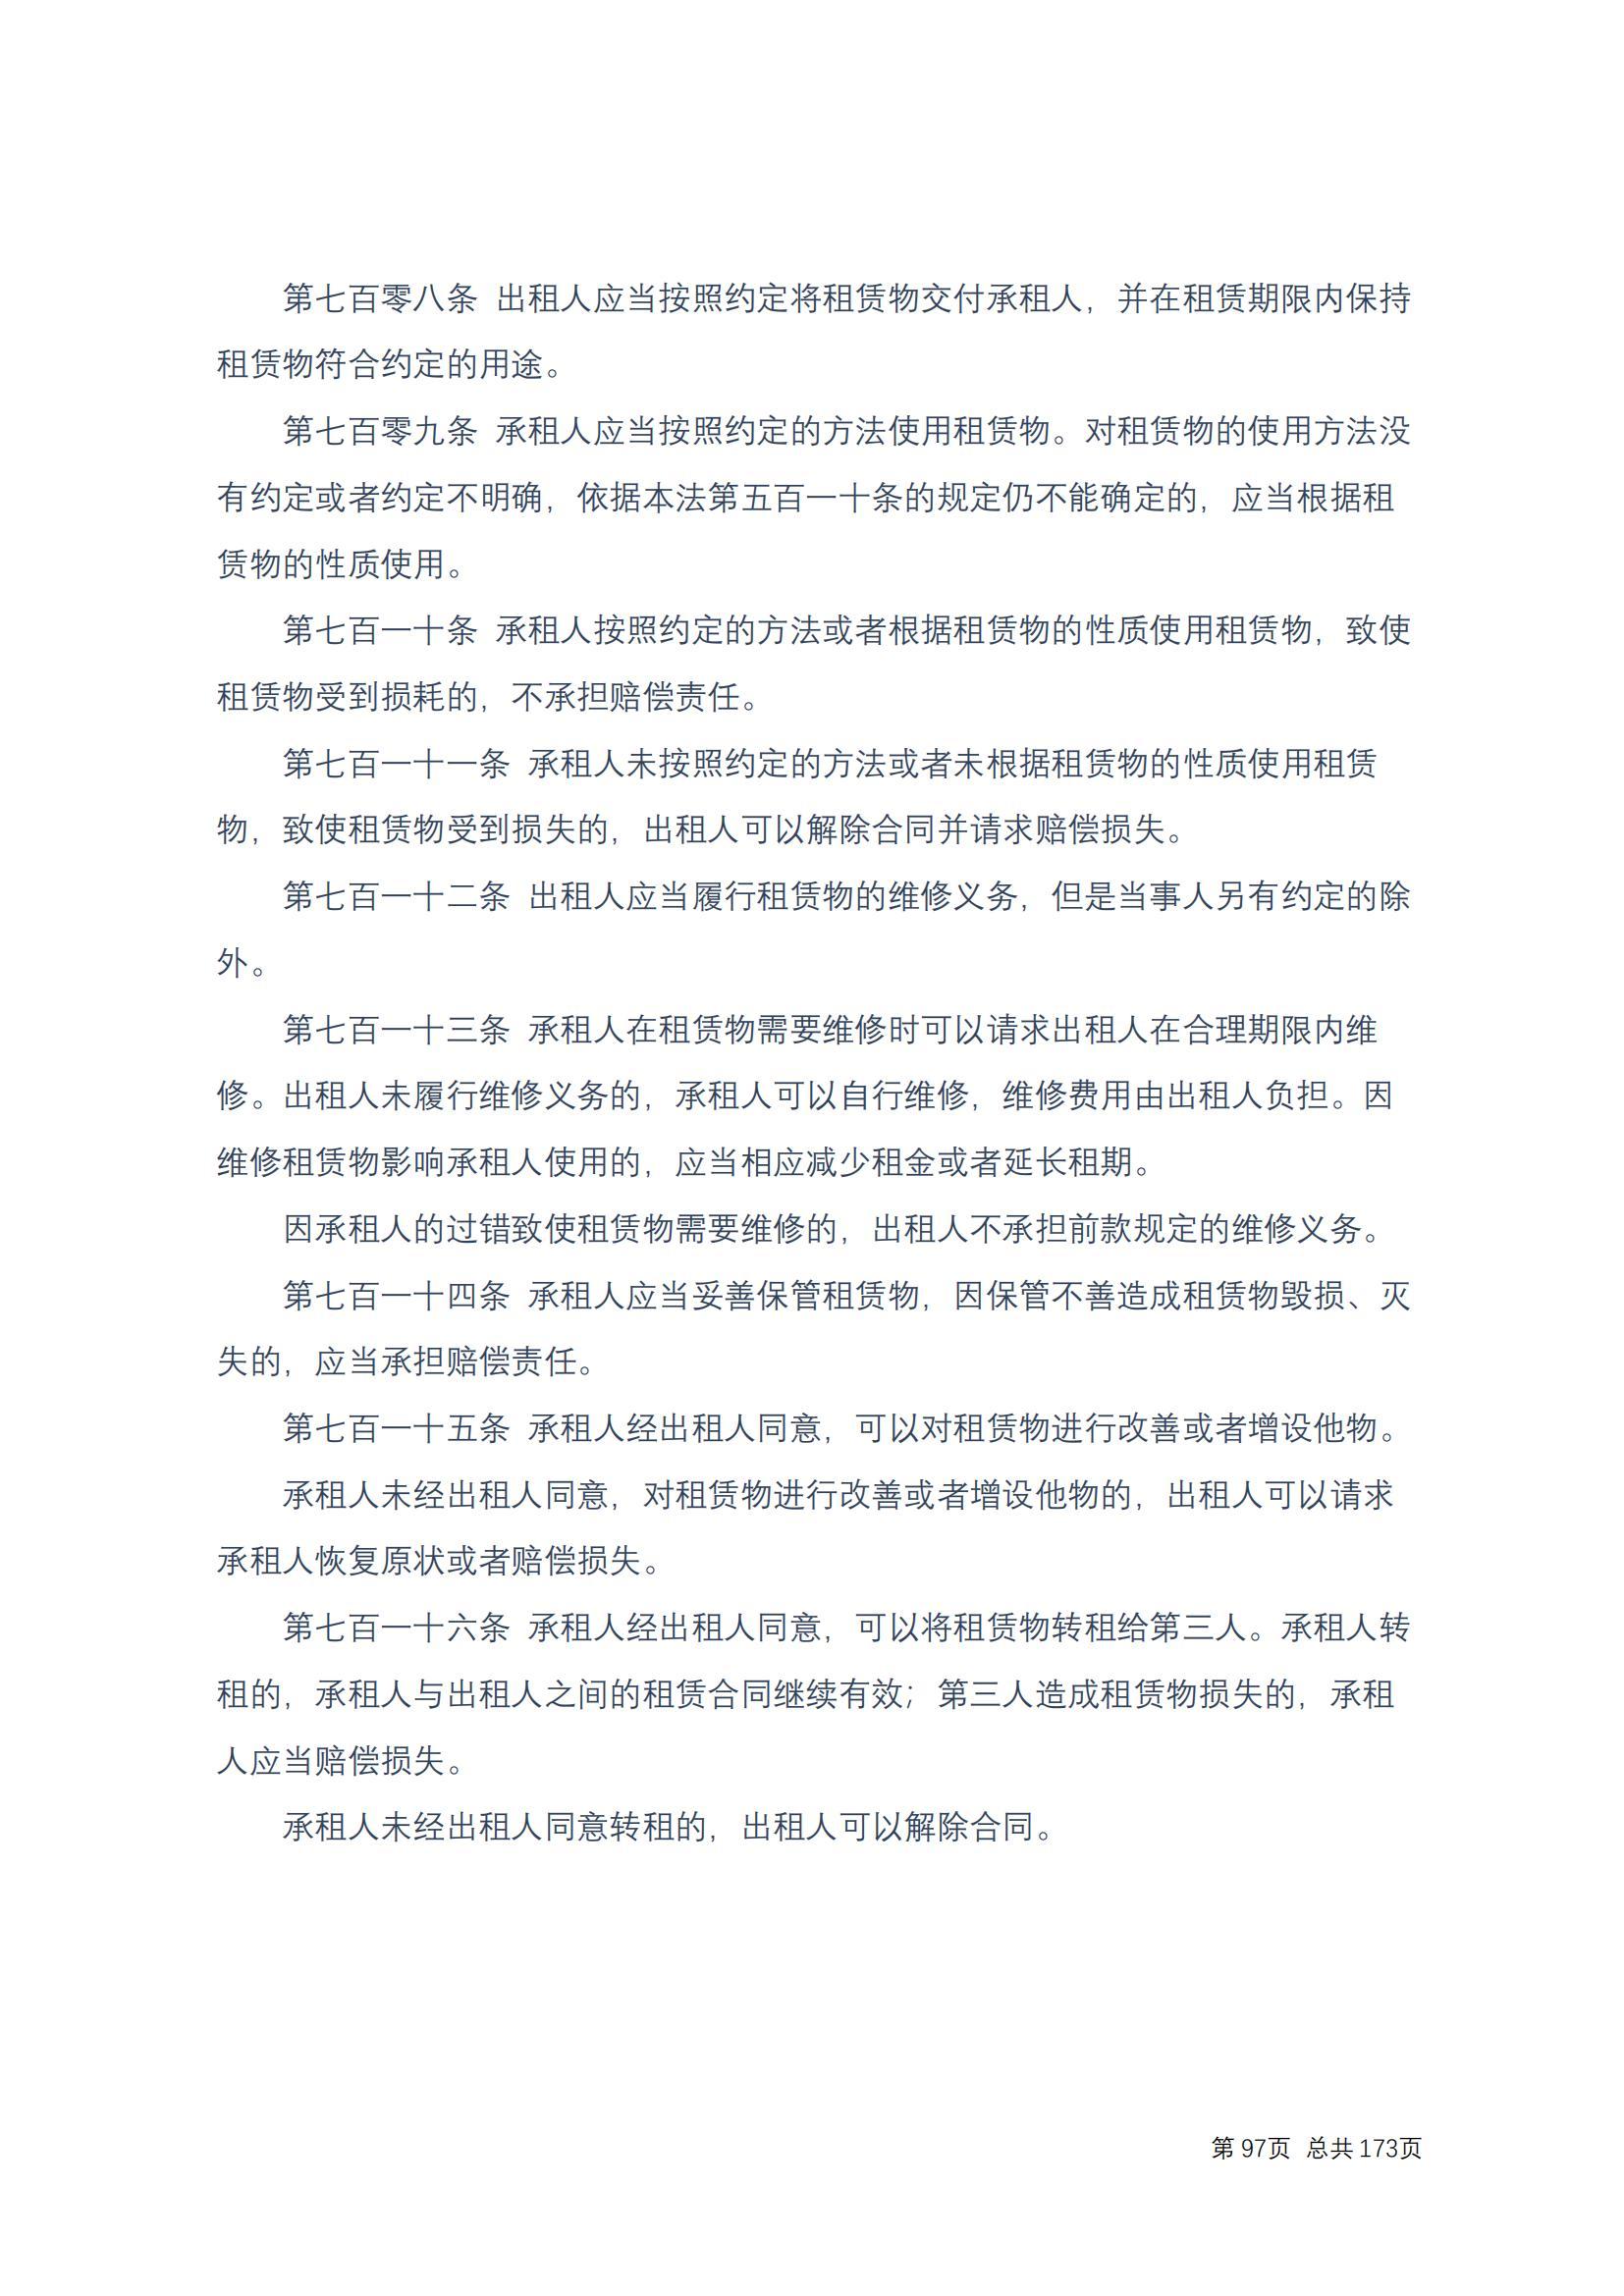 中华人民共和国民法典 修改过_96